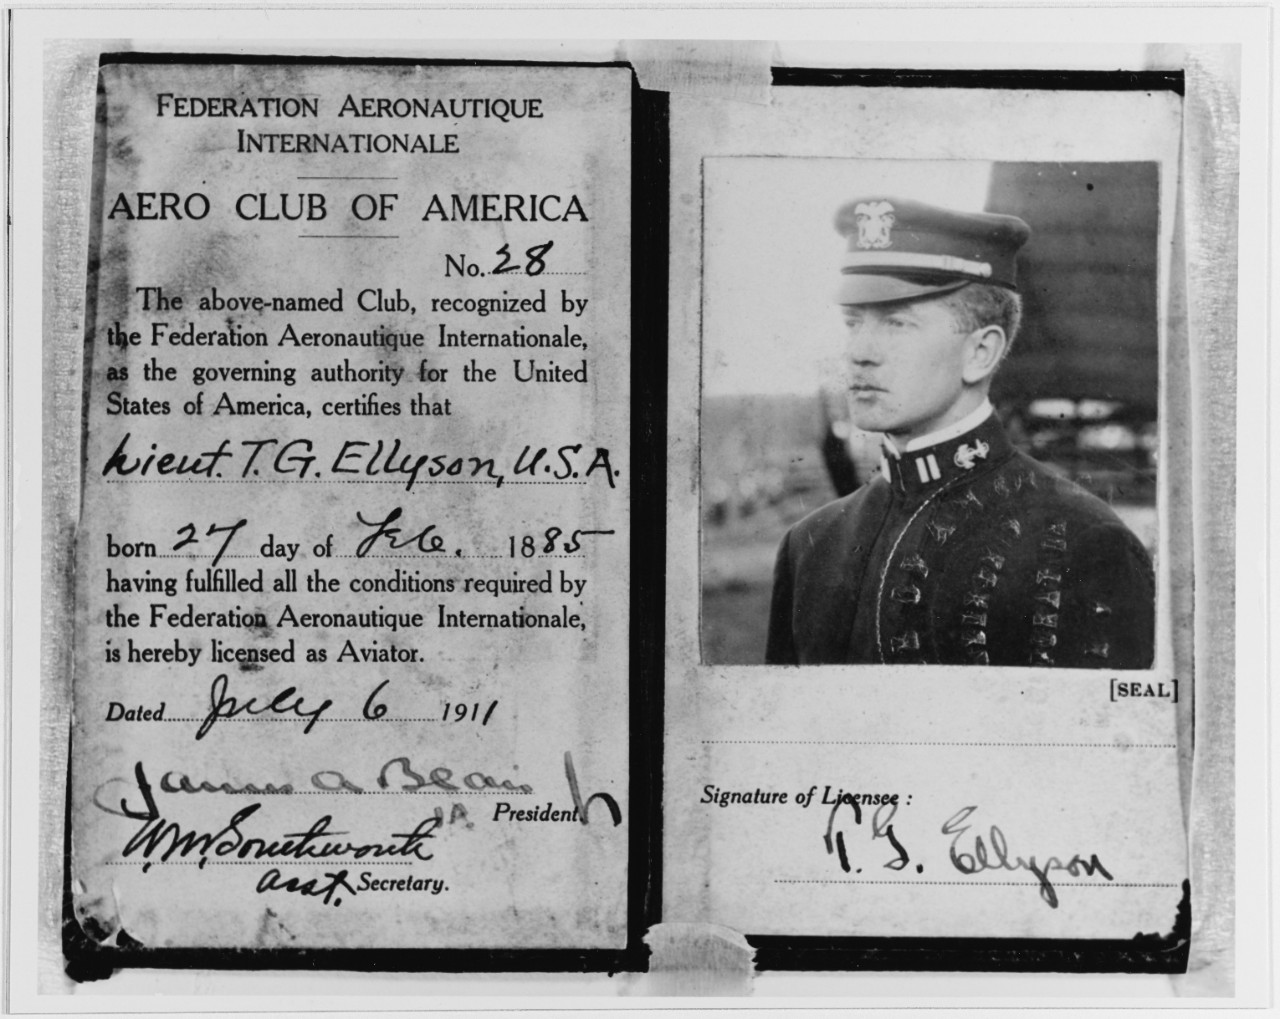 Aero Club of America Certificate